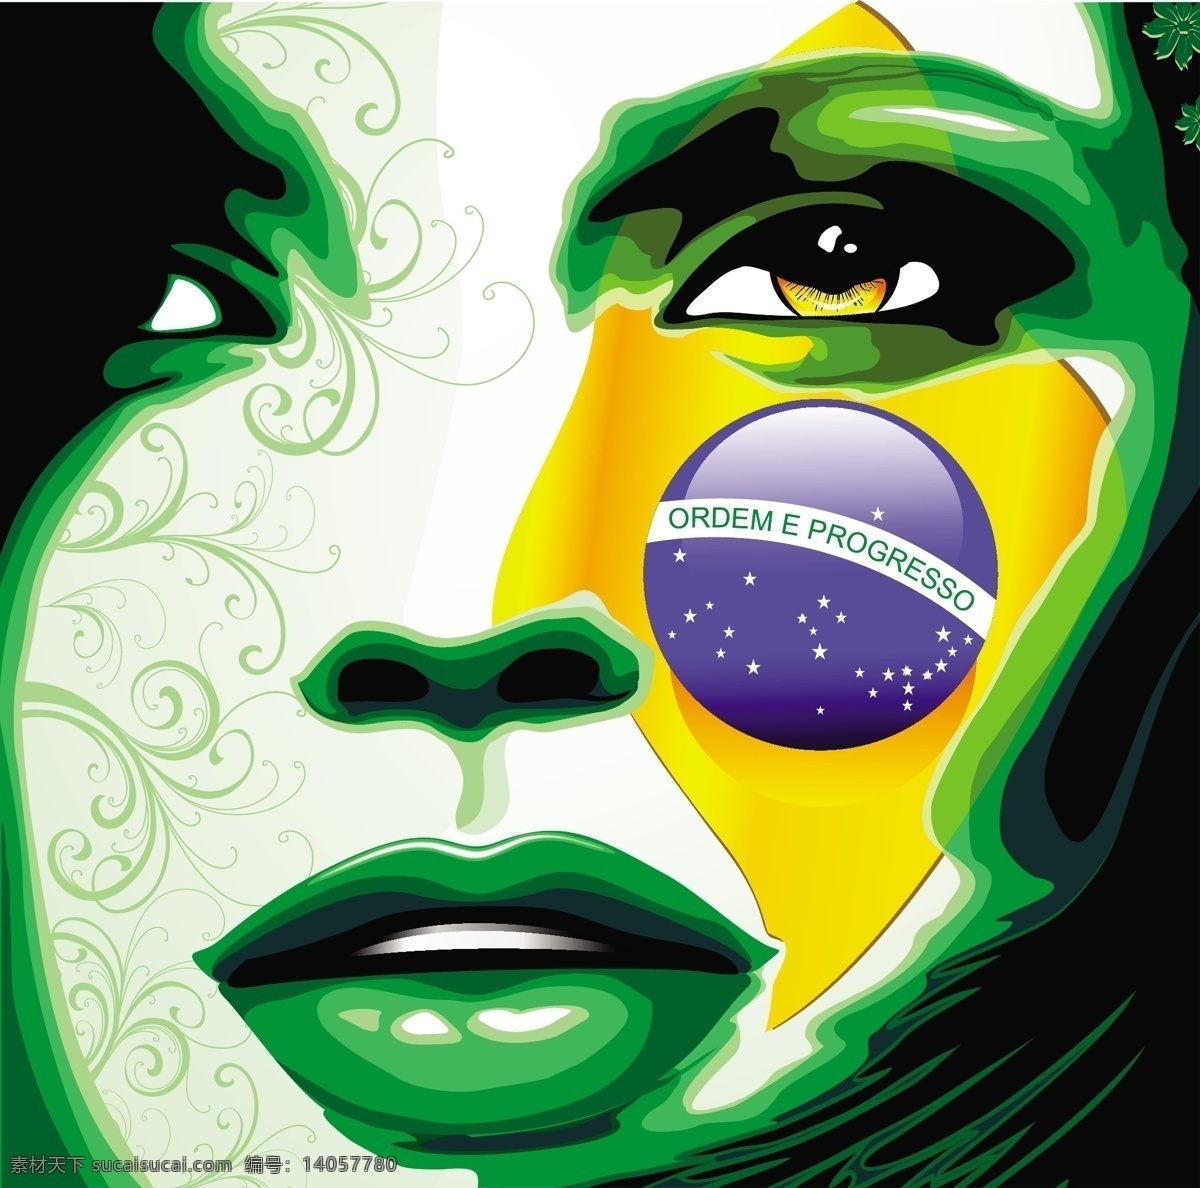 涂鸦 美女 世界杯 标志 模板下载 绿色 巴西 背景 足球 体育运动 生活百科 矢量素材 黑色